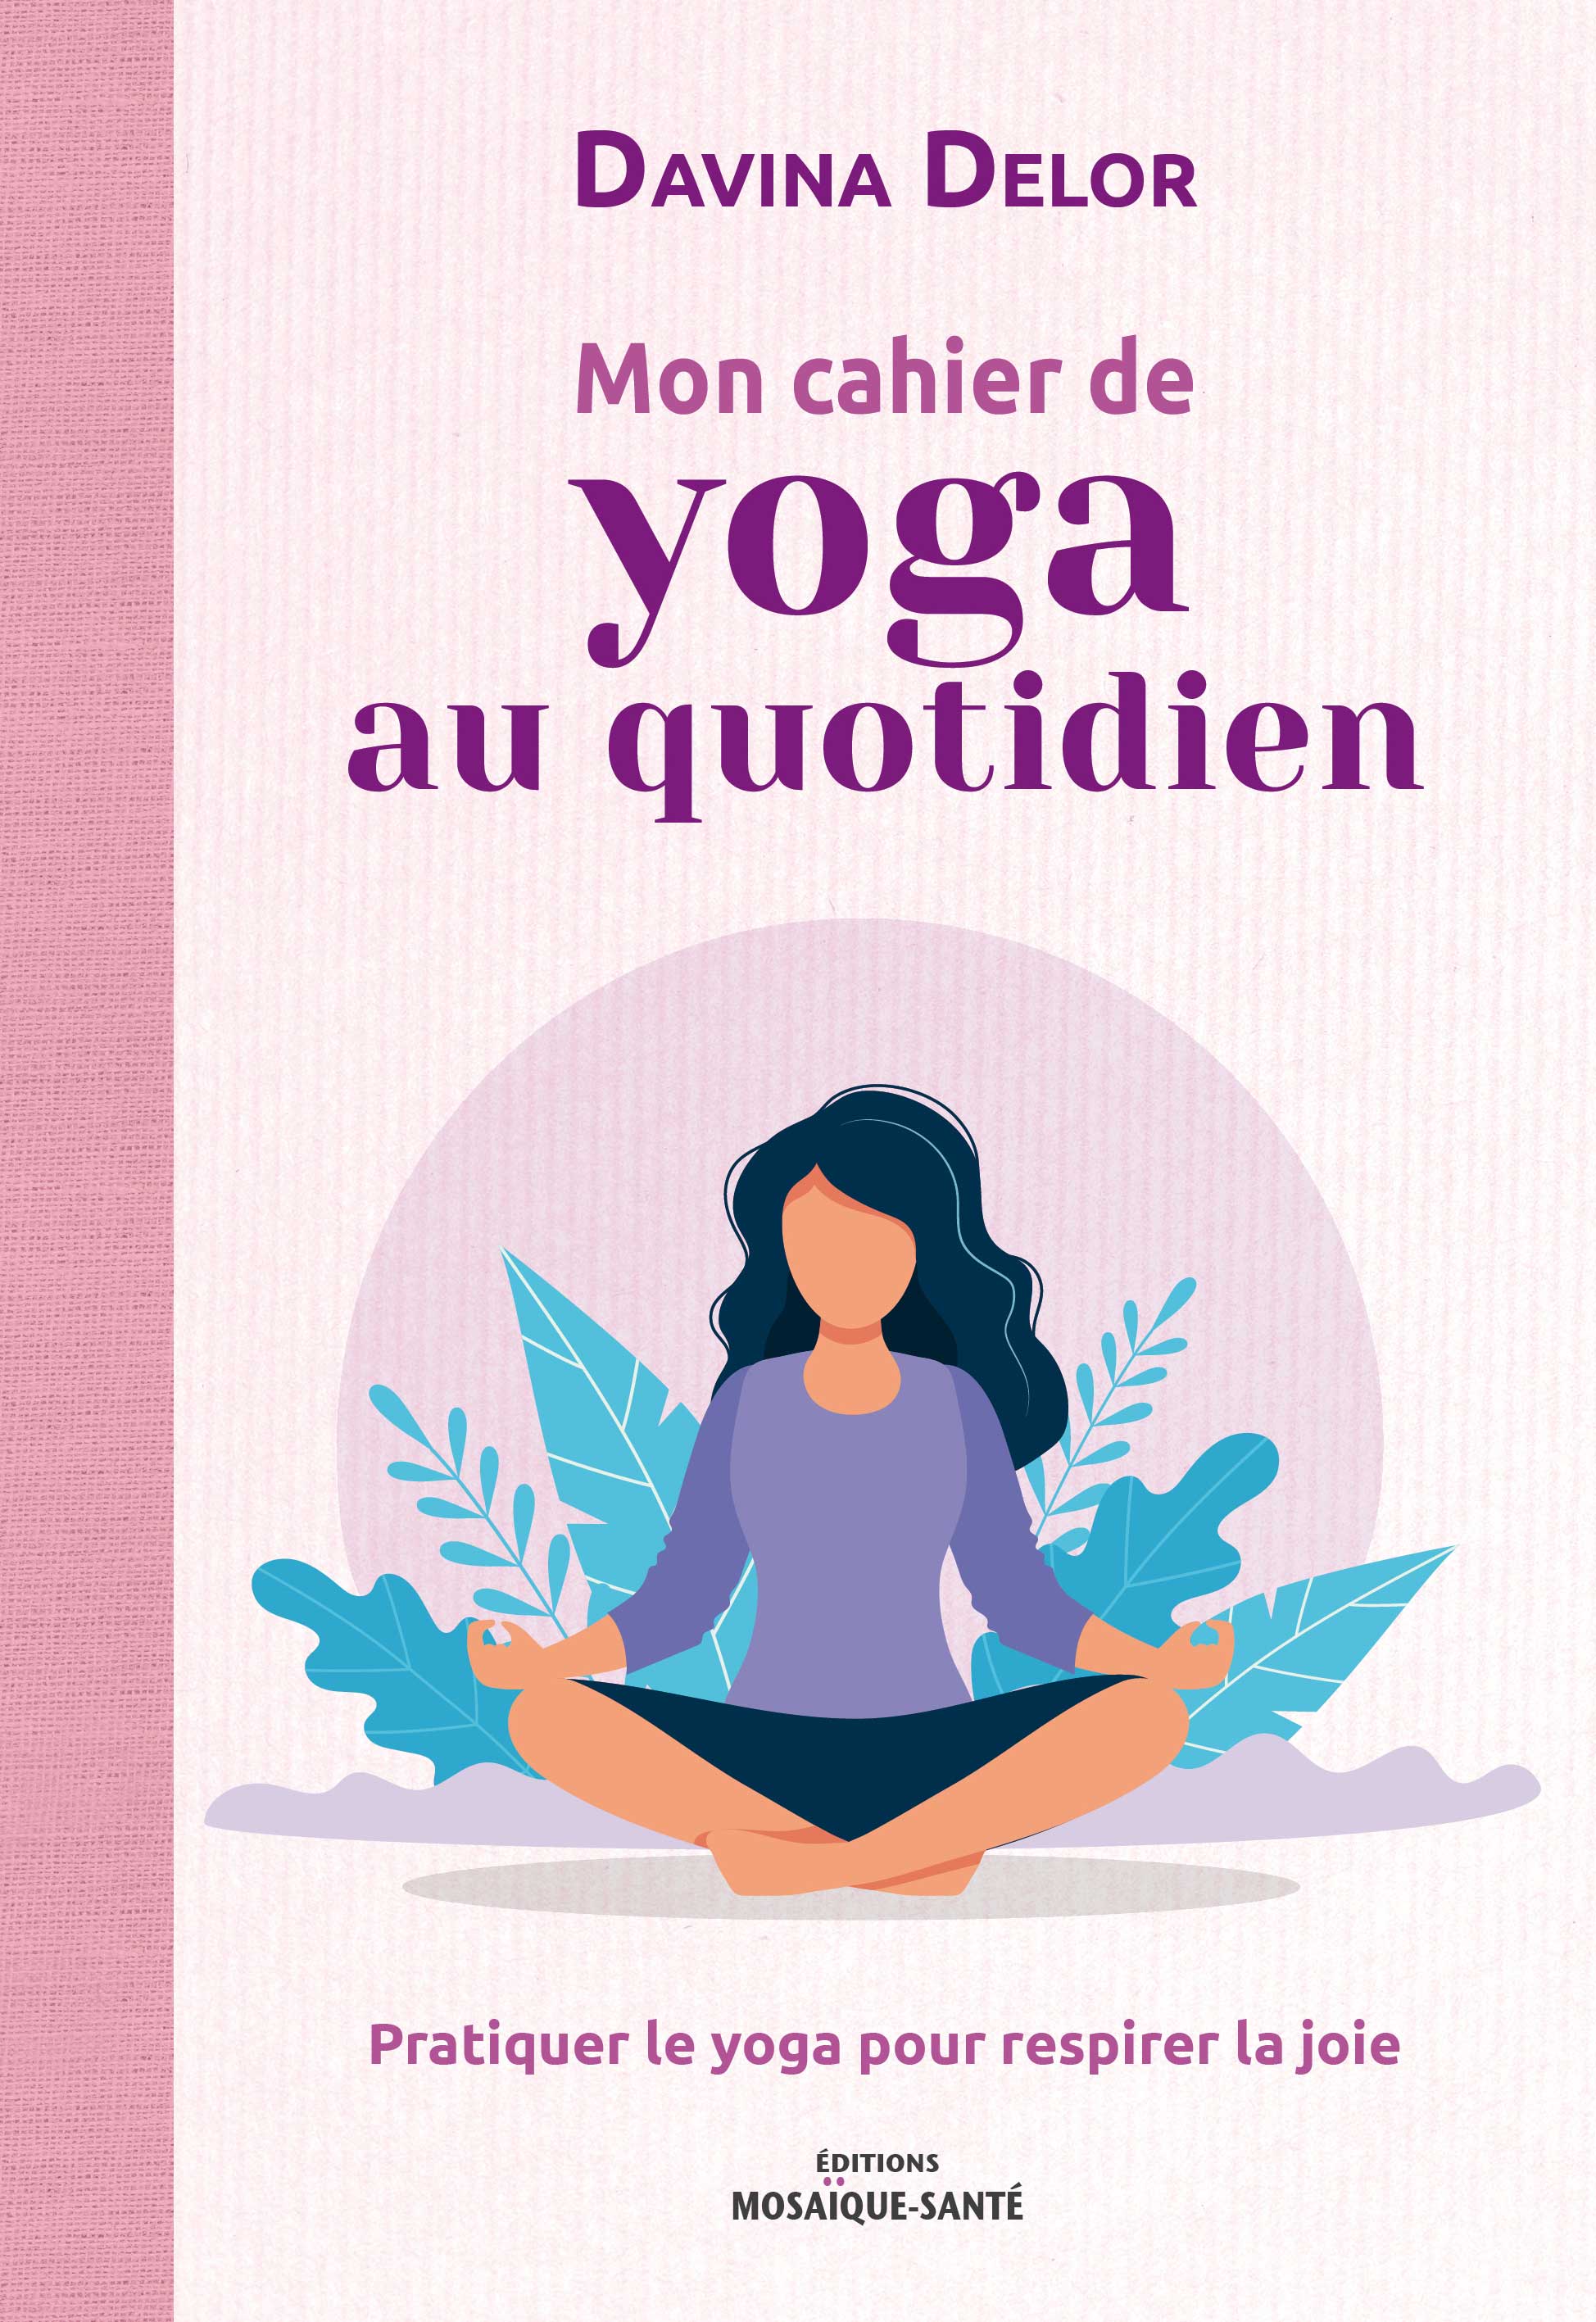 Mon cahier de yoga au quotidien de Davina Delor